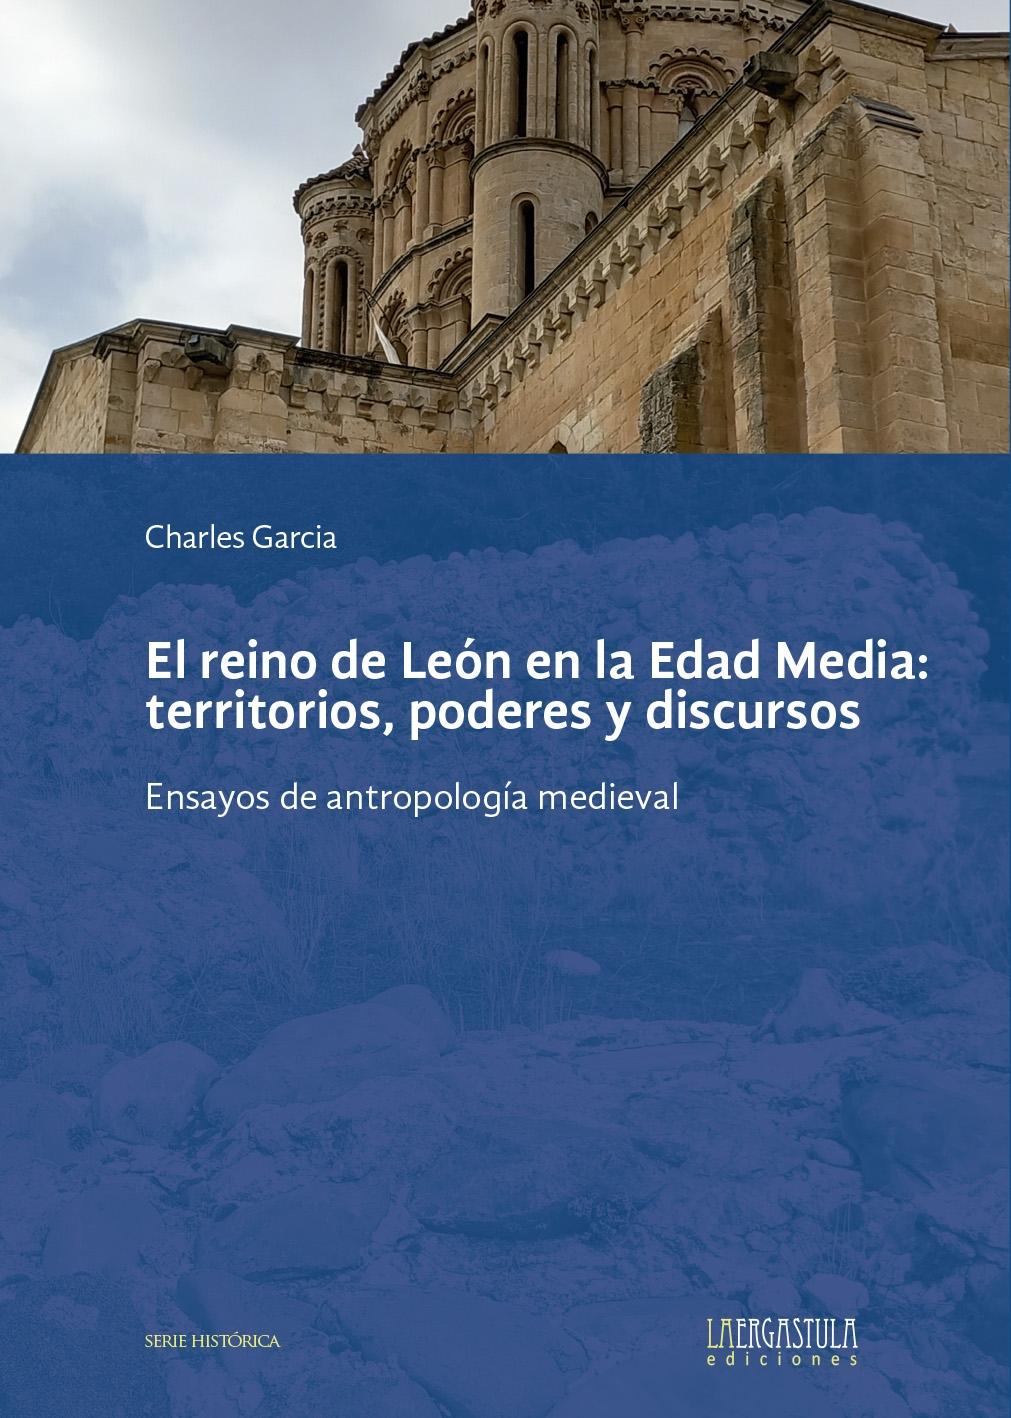 El Reino de León en la Edad Media: territorios, poderes y discursos "Ensayos de antropología medieva"